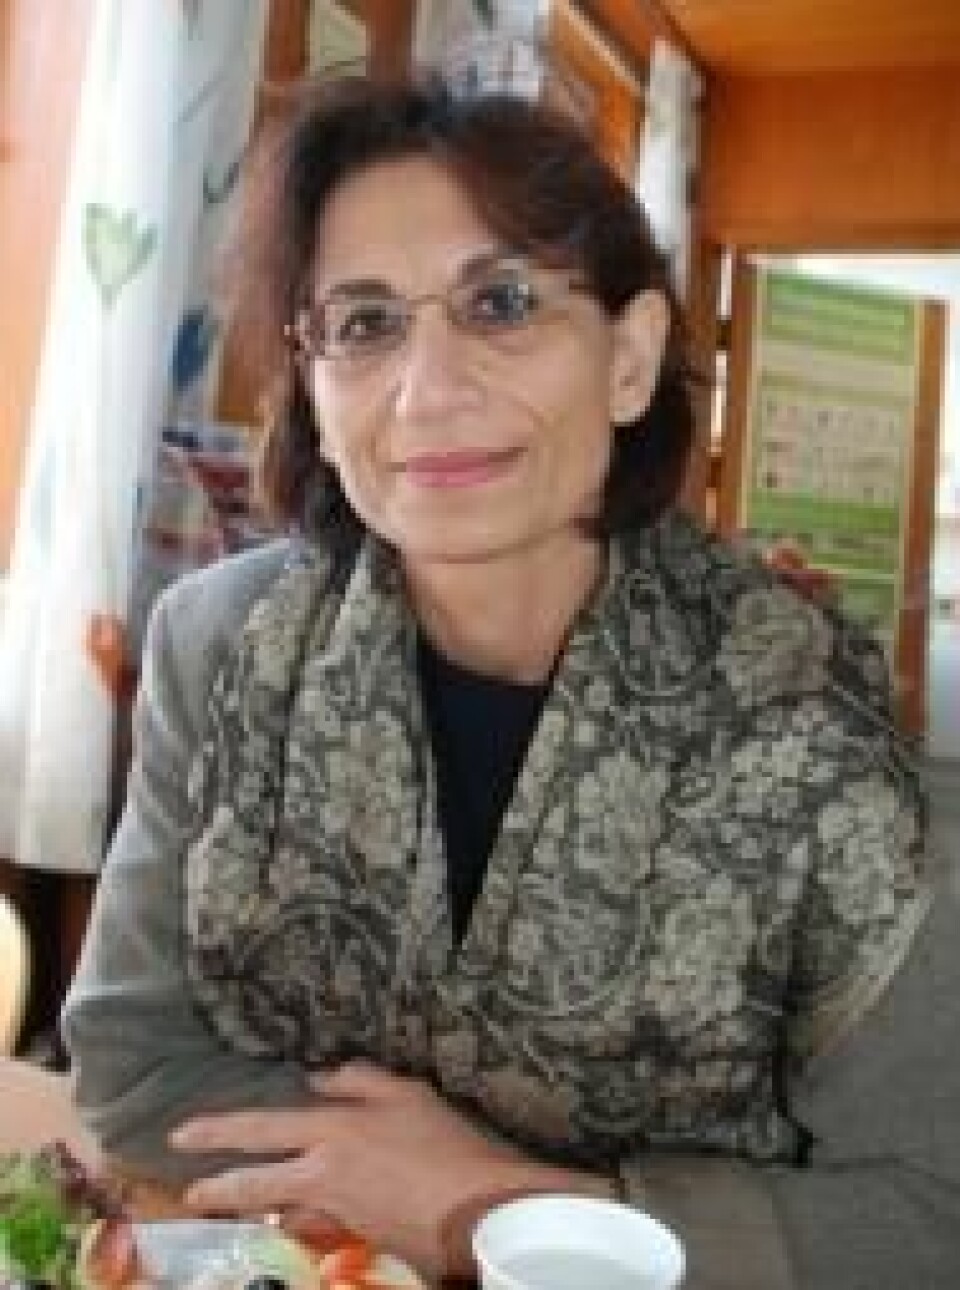 'Professor Ziba Mir-Hosseini er rettsantropolog og jobber på University of London. (Foto: Hannah Helseth)'